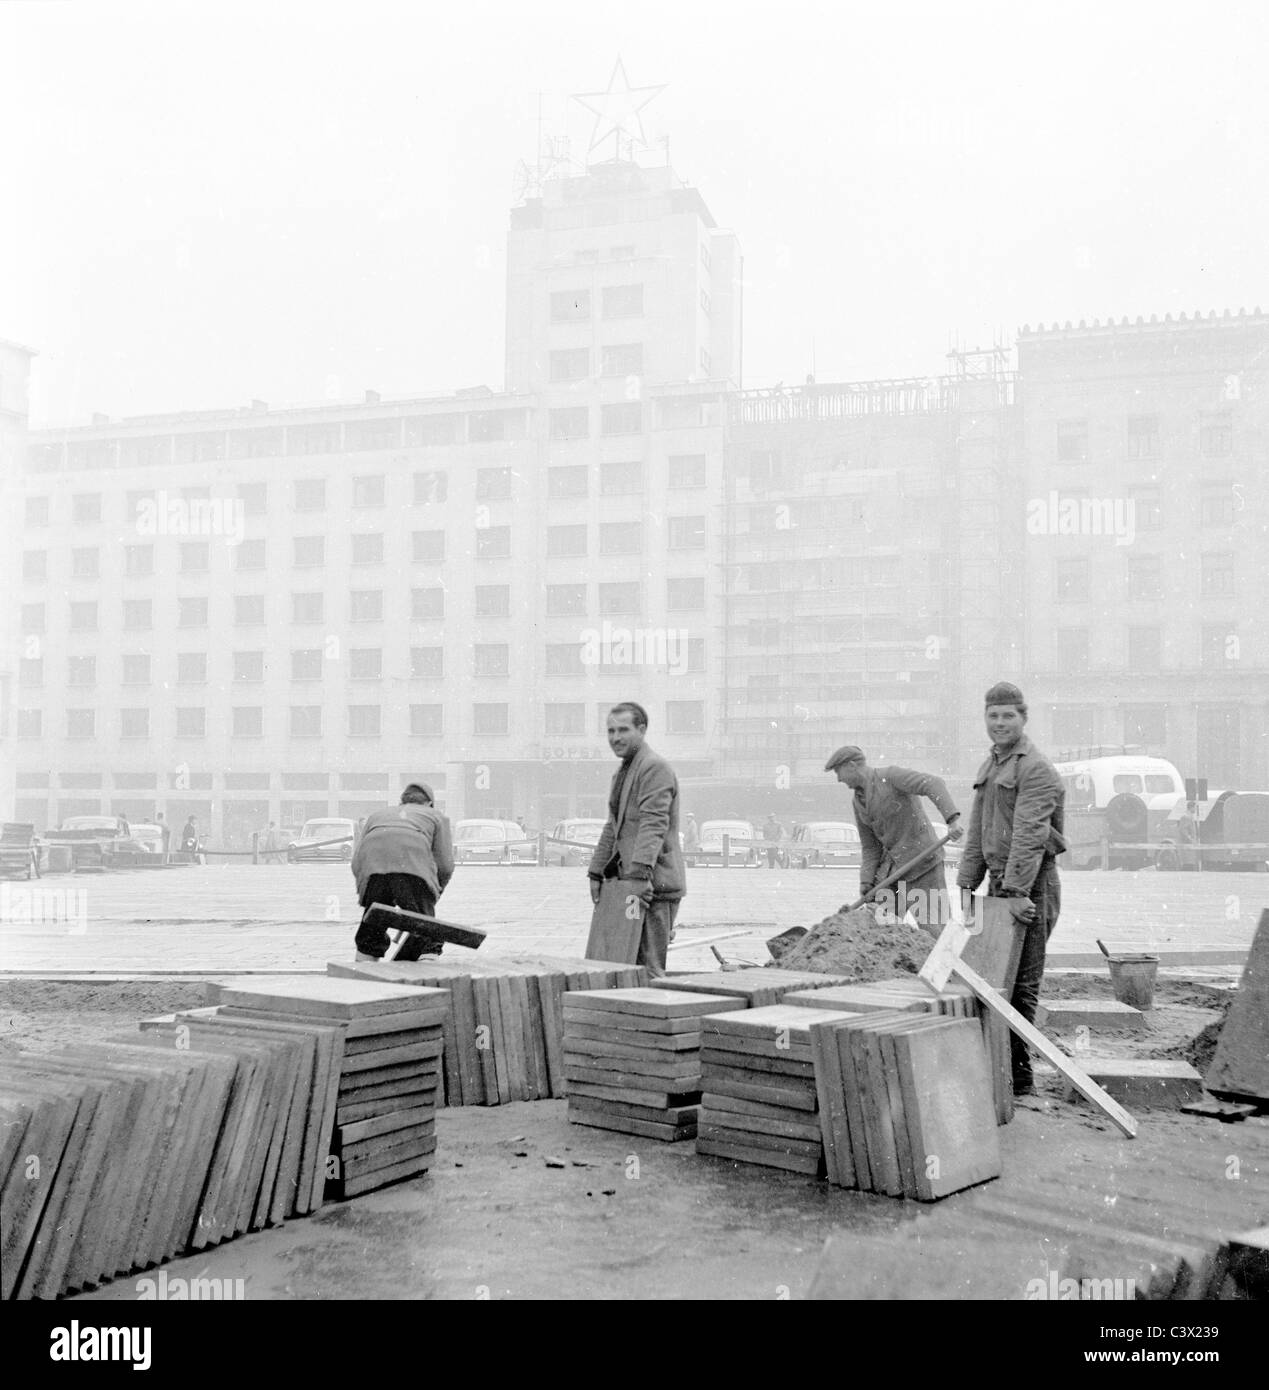 Arbeiter verlegen Pflastersteine in einer Stadt in Jugoslawien, in diesem historischen Bild in den 1950er Jahren von J. Allan Cash. Stockfoto